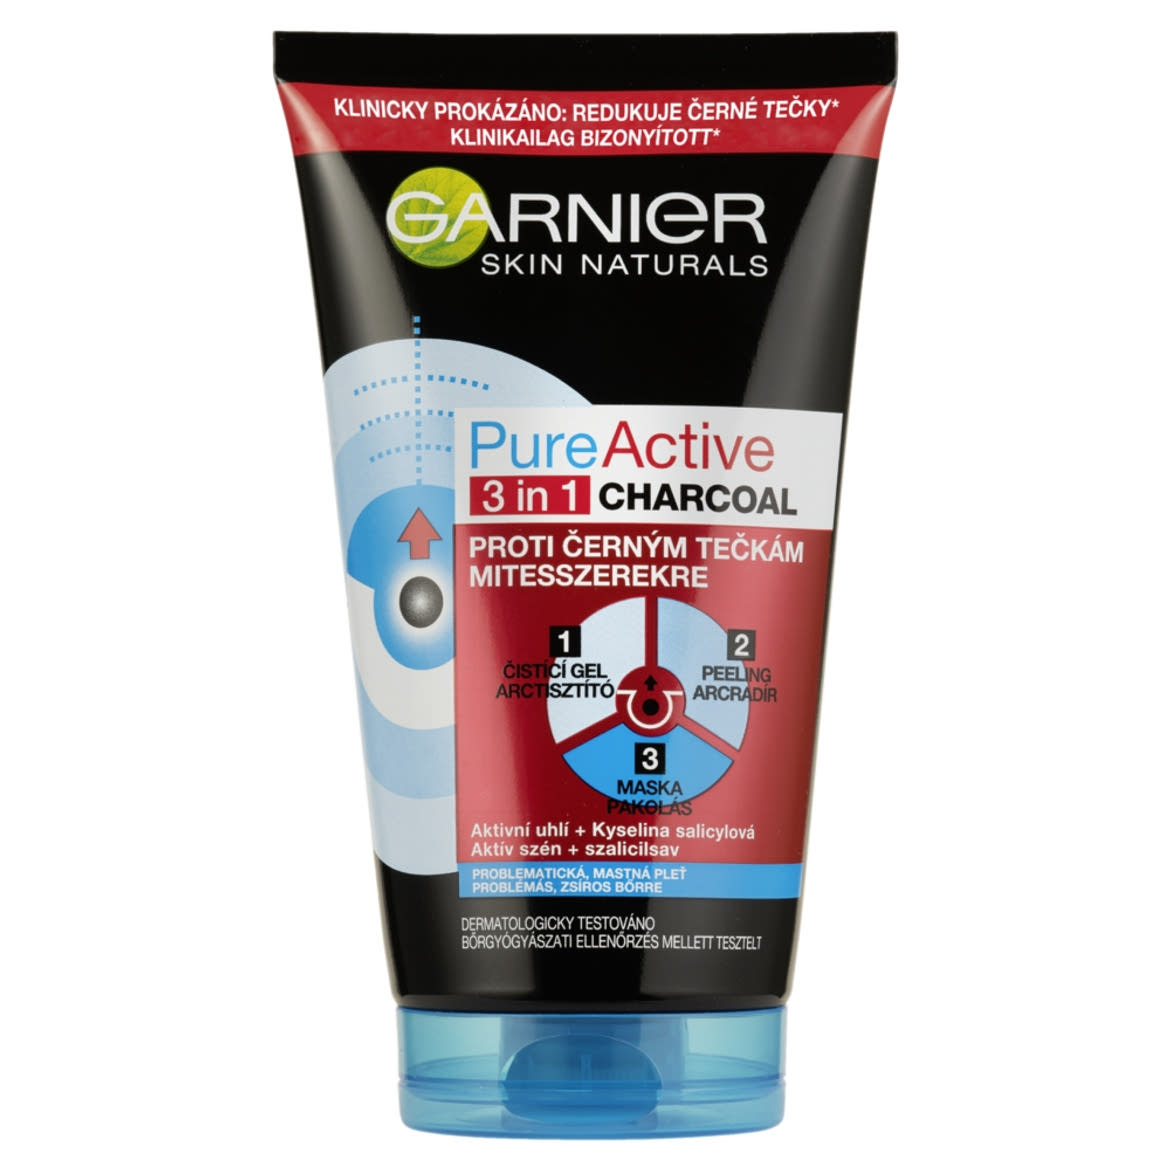 Garnier Skin Naturals Pure Active 3 in1 Mitesszerek Ellen Arcmaszk Aktív Szénnel